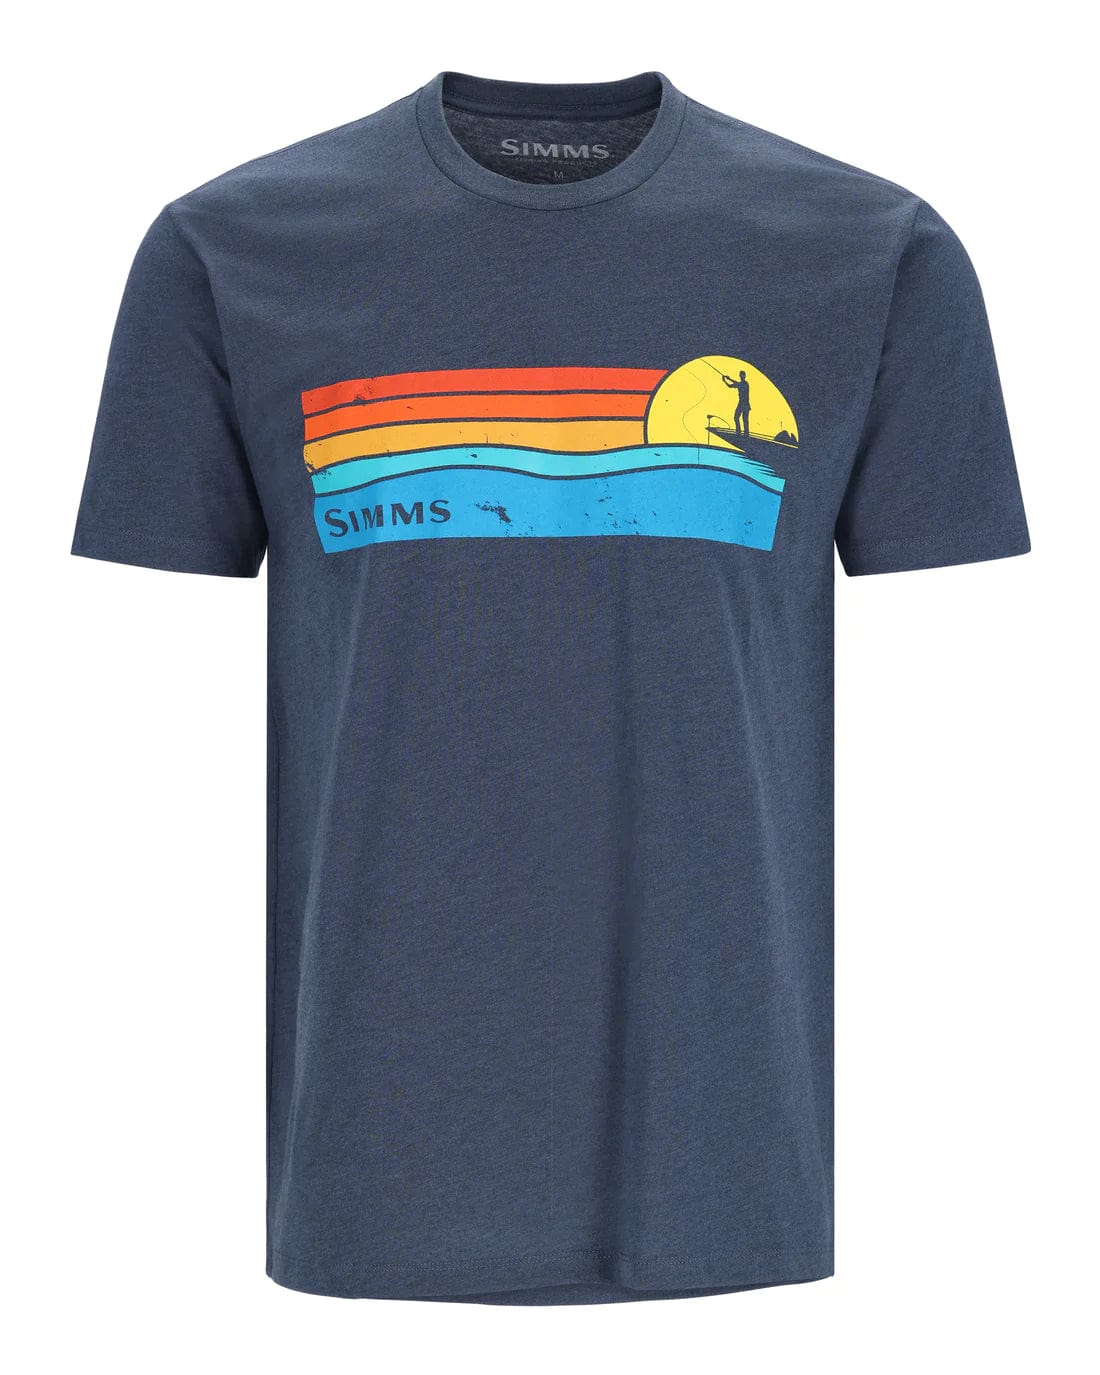 Simms Men's Sunset T-Shirt, Navy Heather / M